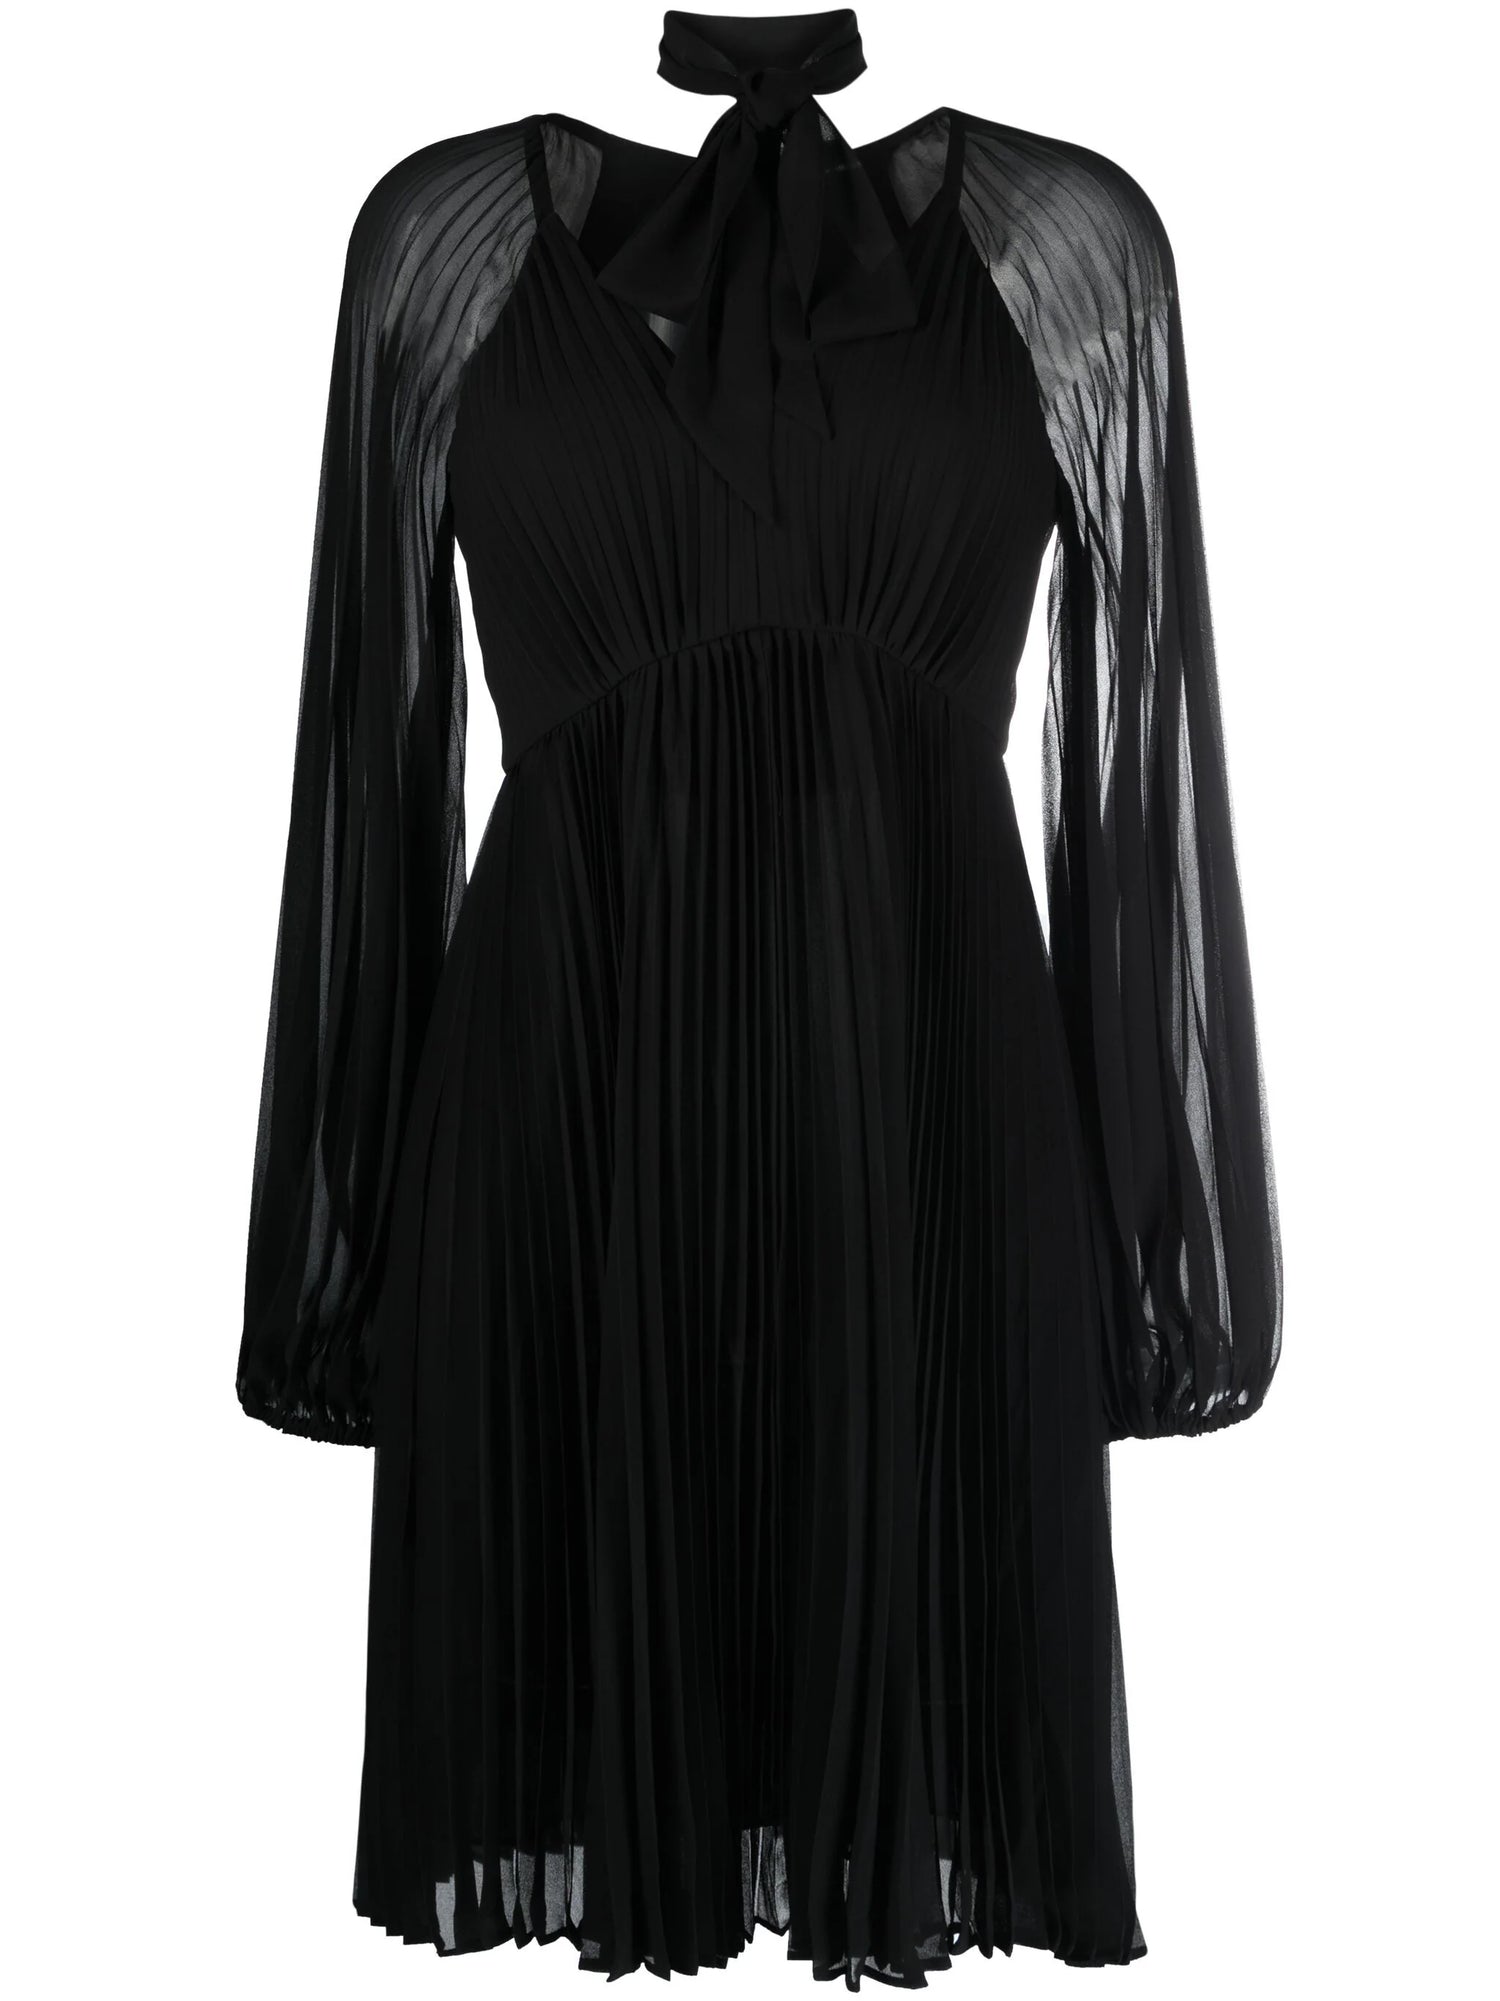 Sunray pleated mini dress, black